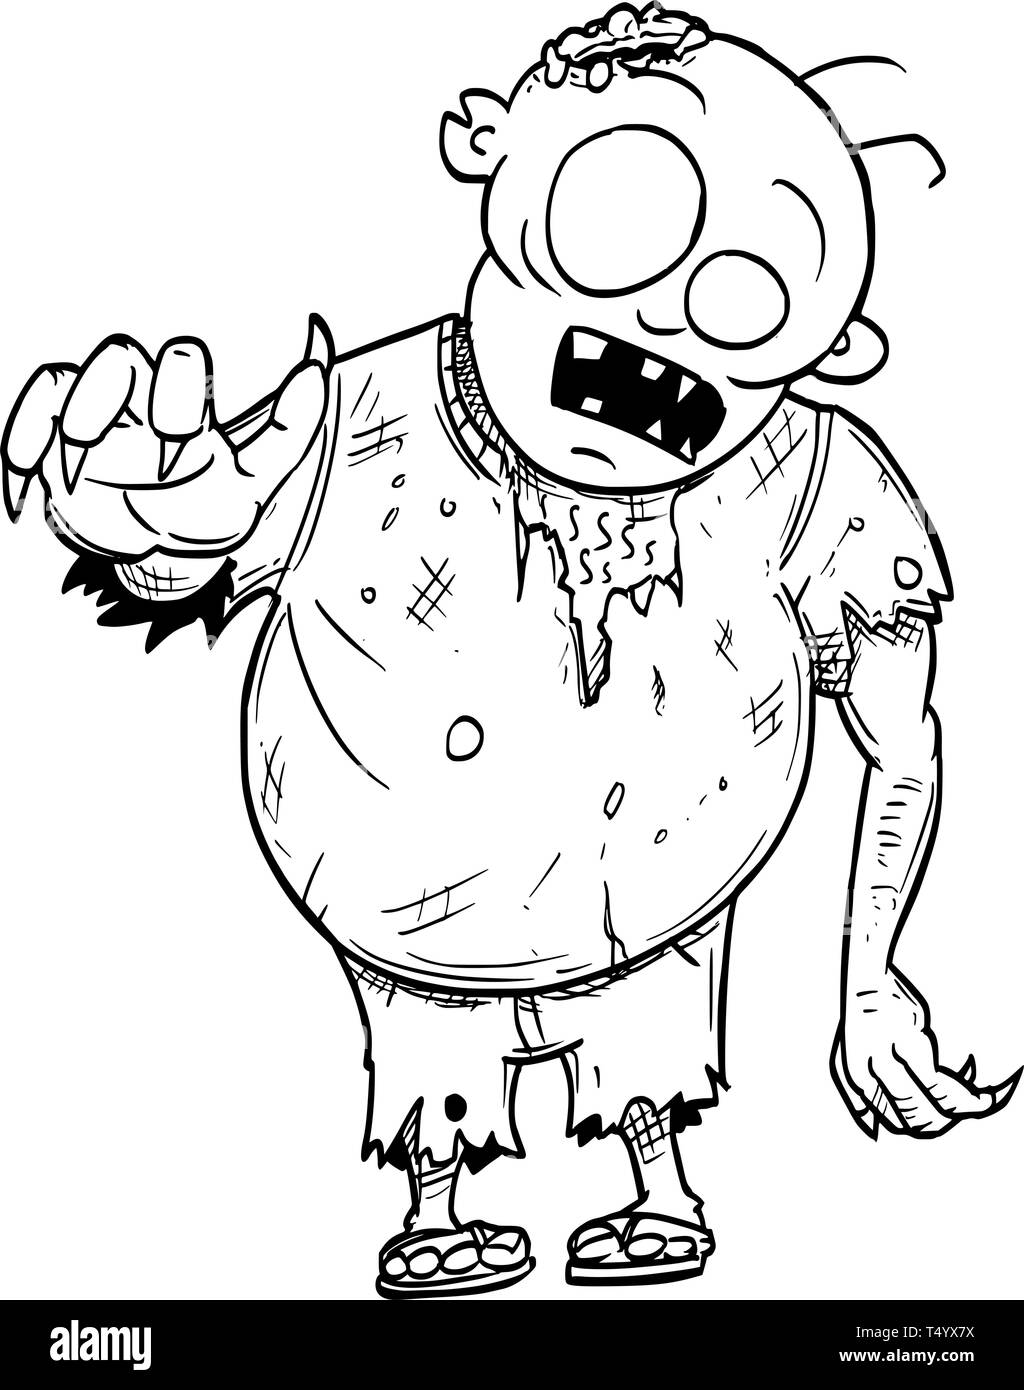 Zombie disegno Immagini Vettoriali Stock - Alamy